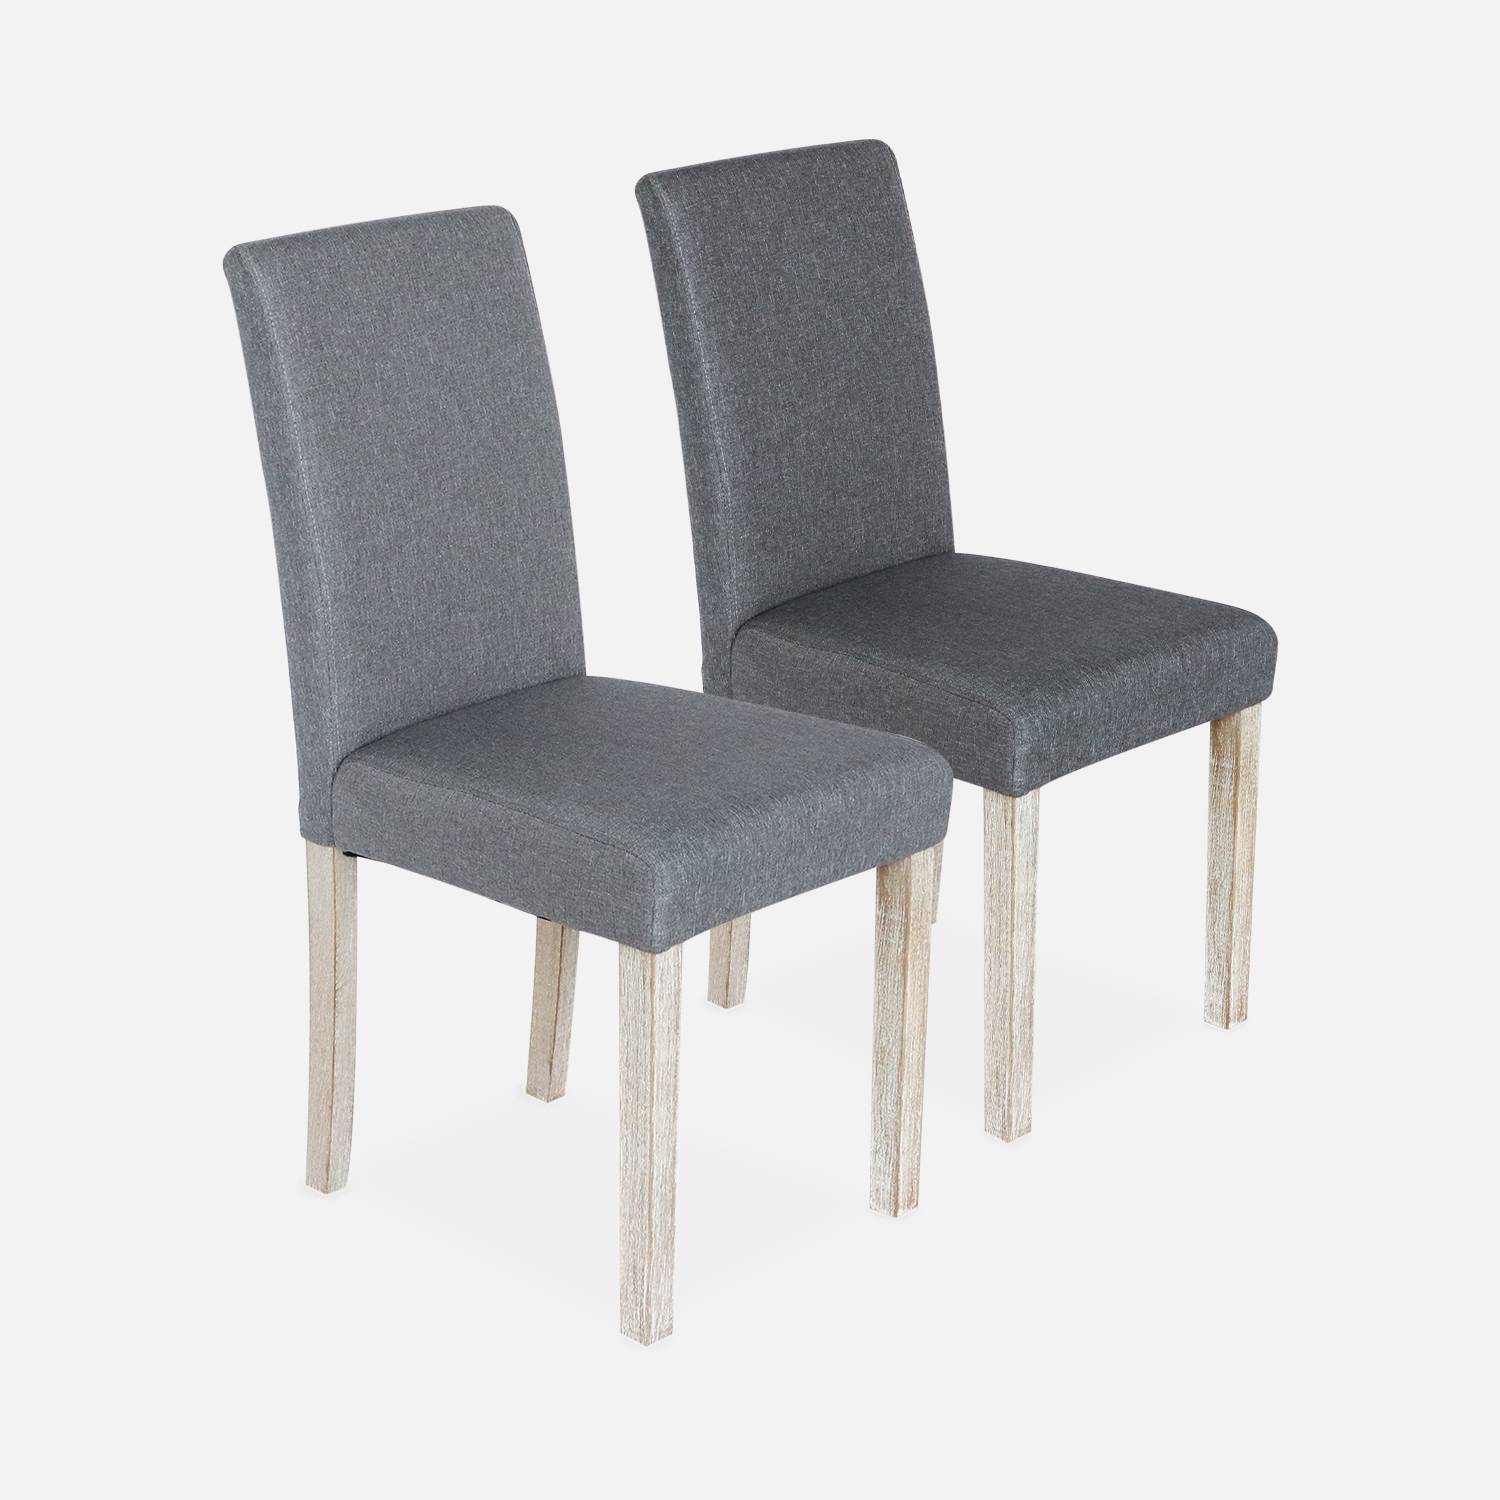 Lote de 2 sillas - Rita - sillas de tela, patas madera lacada  Photo6